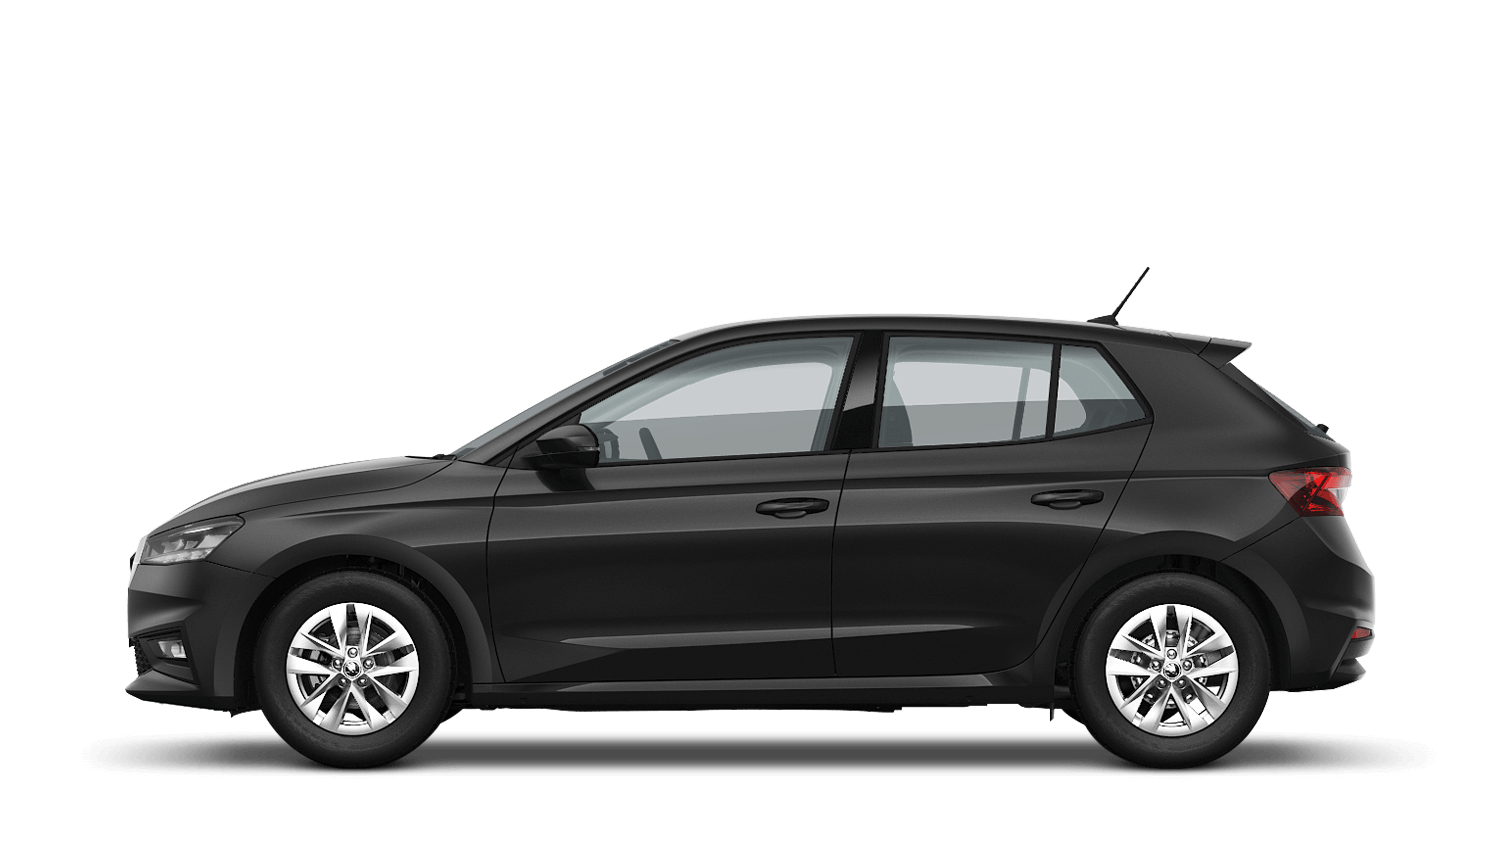 Škoda Fabia Hatch PCP Finance Offer